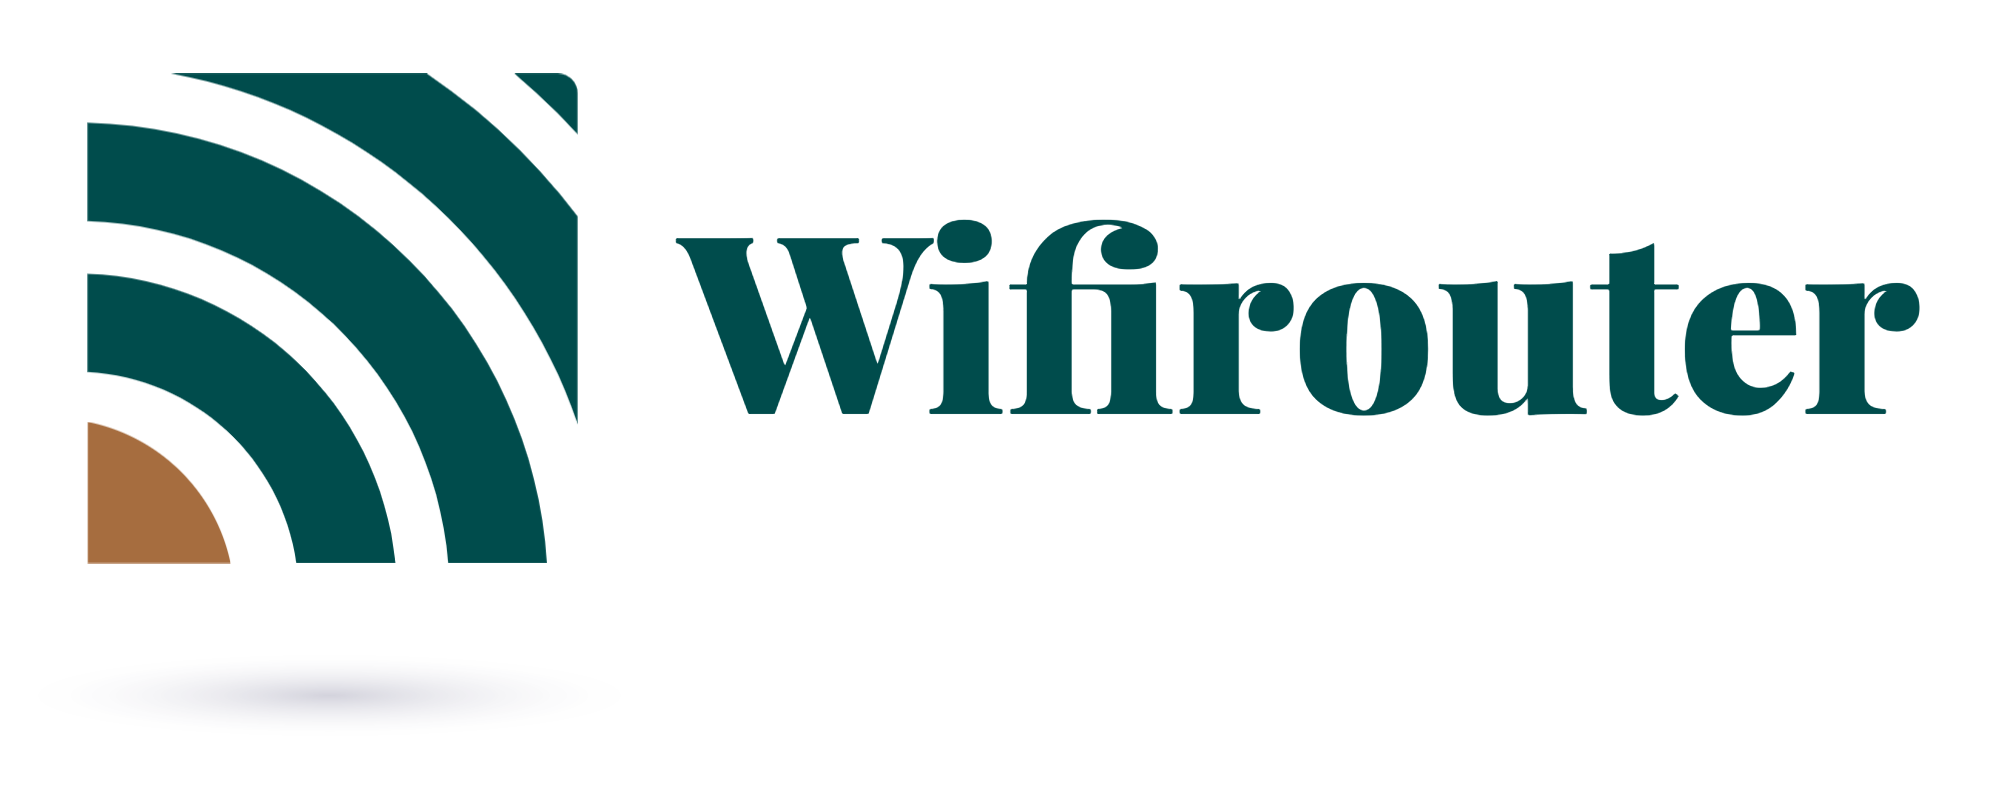 Wifirouter|無線網絡方案|網絡電話系統|辦公室網絡工程|學校無線網絡方案 Logo